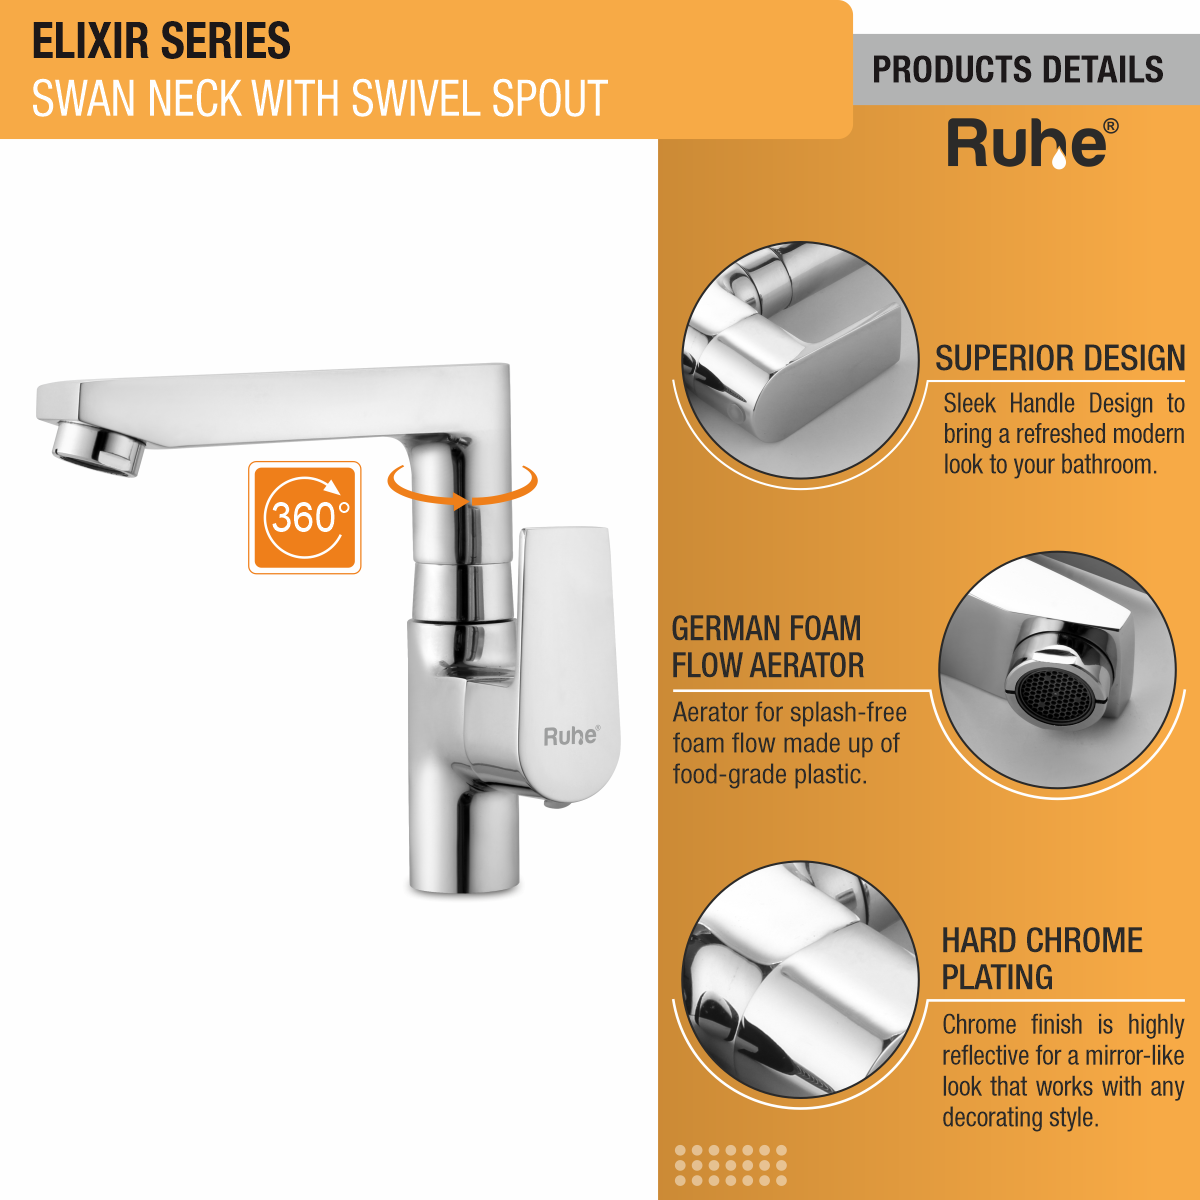 Elixir Swan Neck with Swivel Spout Faucet product details